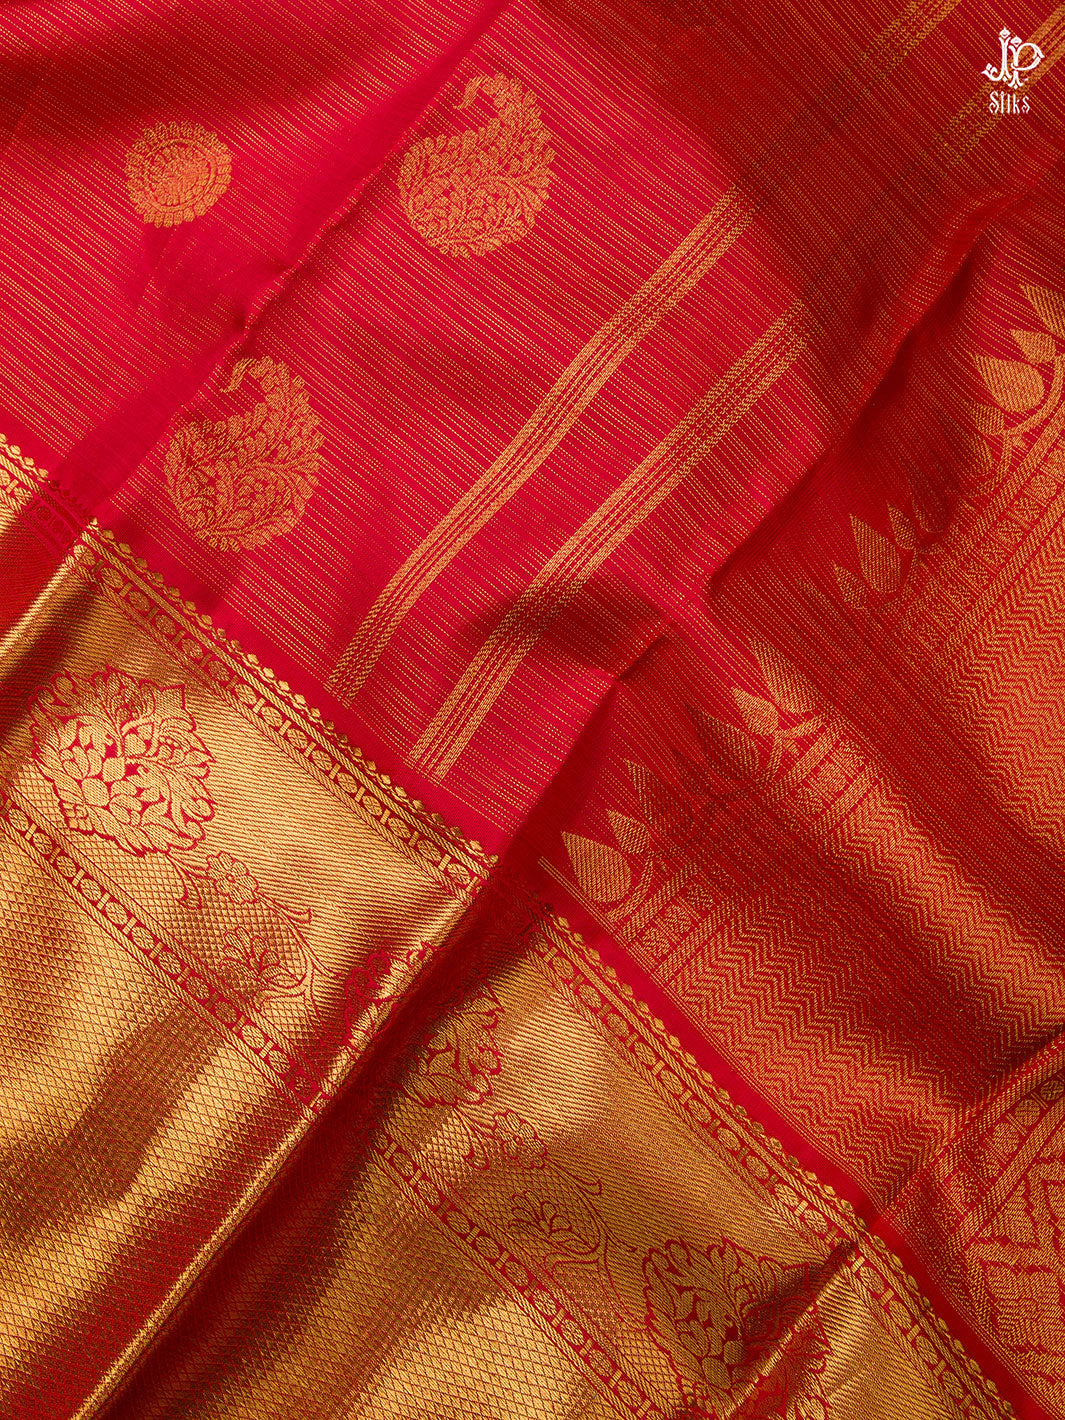 Red Kanchipuram Silk Saree - D6756 - View 2